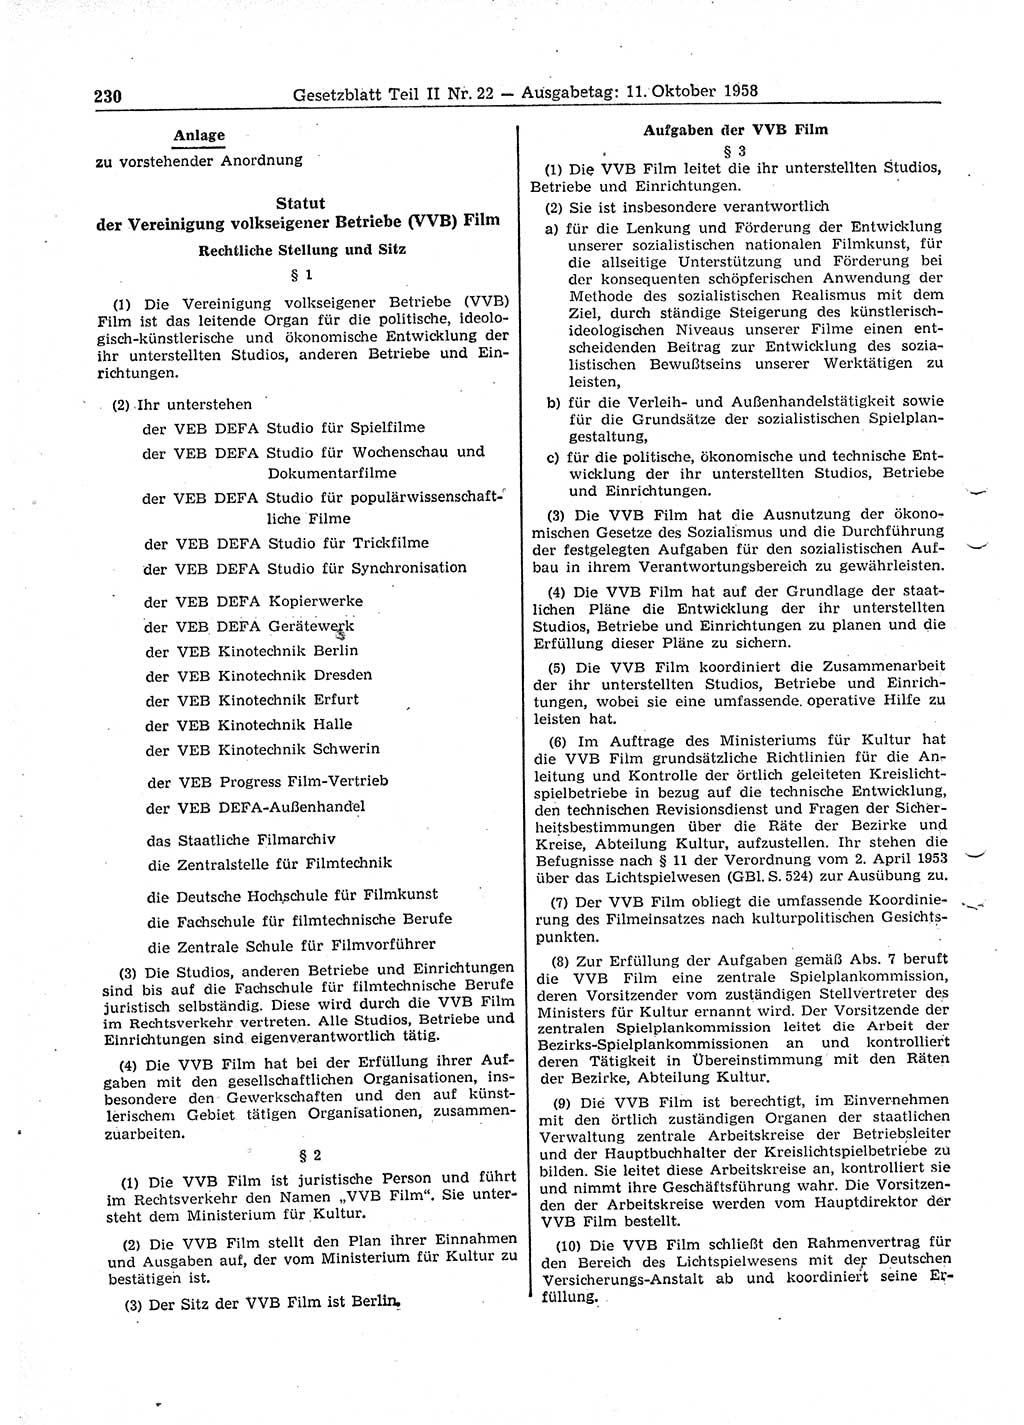 Gesetzblatt (GBl.) der Deutschen Demokratischen Republik (DDR) Teil ⅠⅠ 1958, Seite 230 (GBl. DDR ⅠⅠ 1958, S. 230)